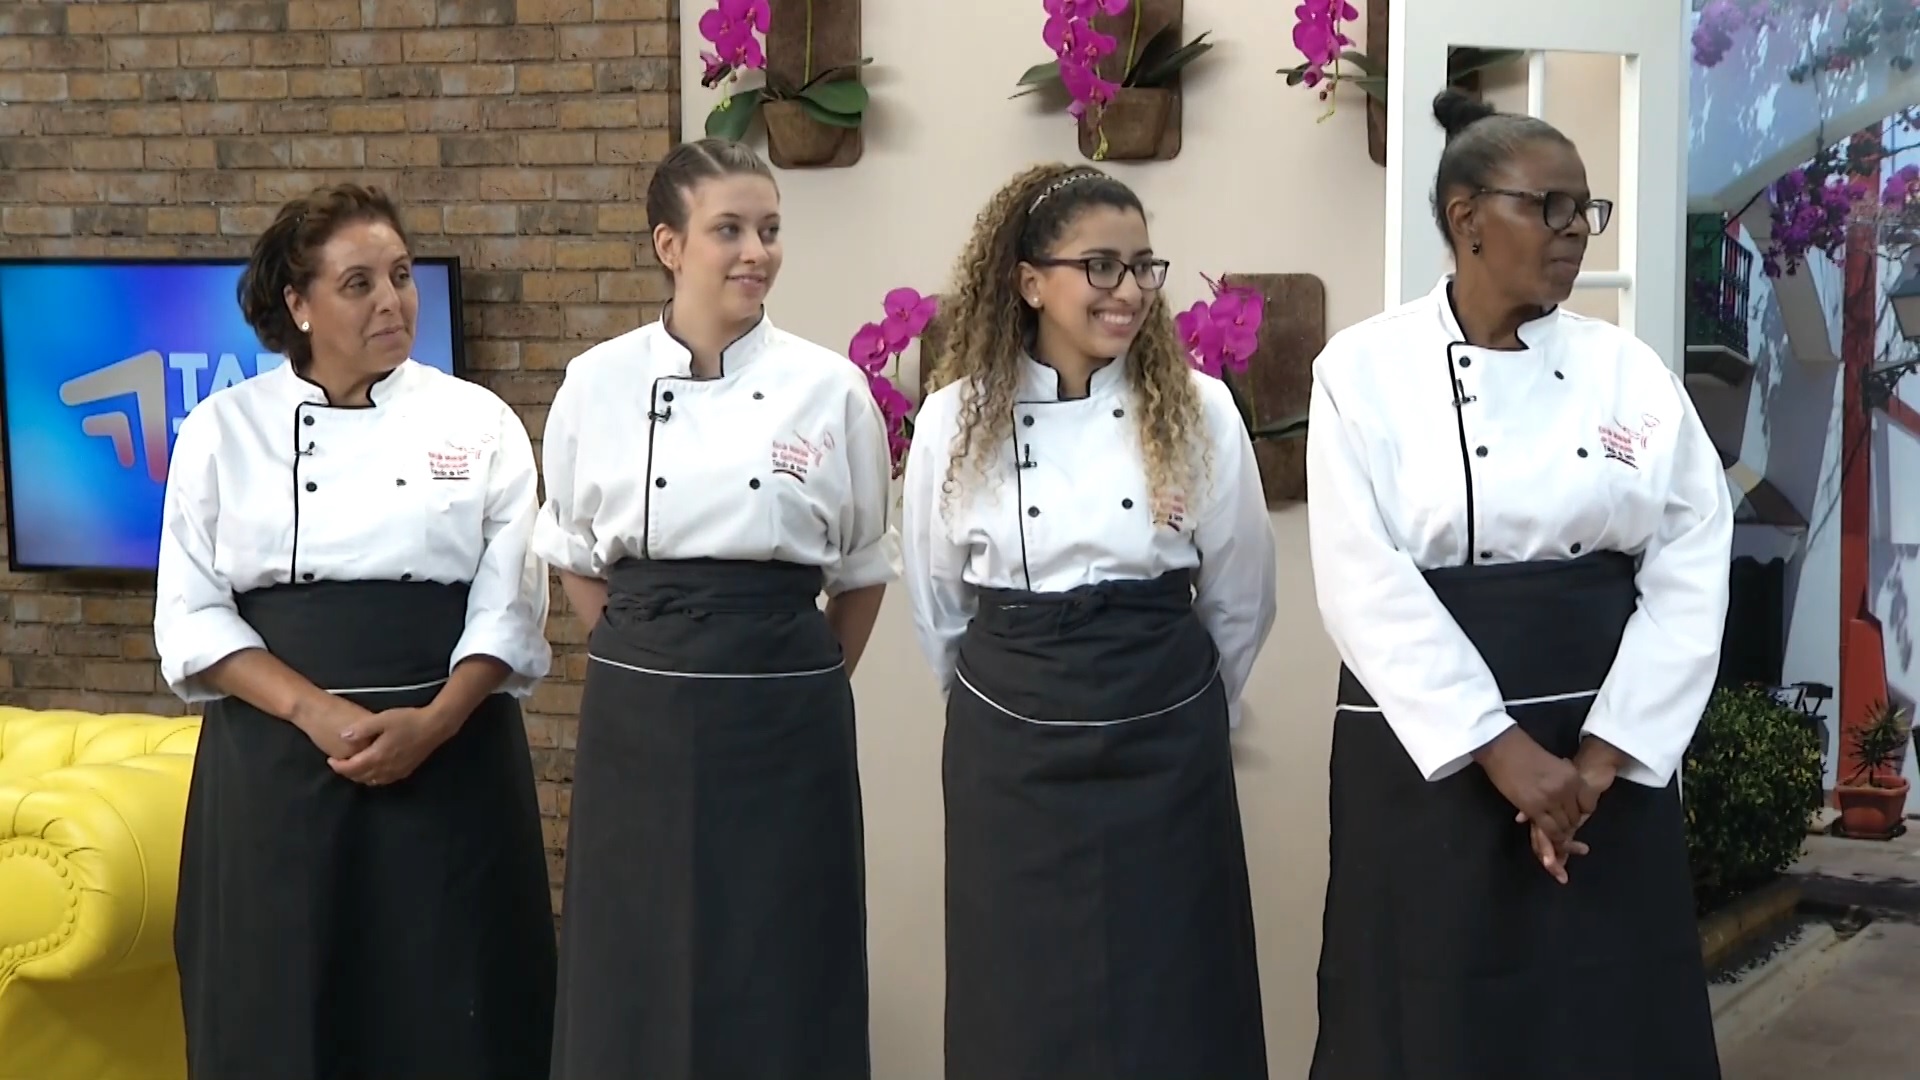 FOTO 01 - Alunos da Escola de Gastronomia e Hotelaria de Taboão da Serra participaram de concurso em rede nacional00